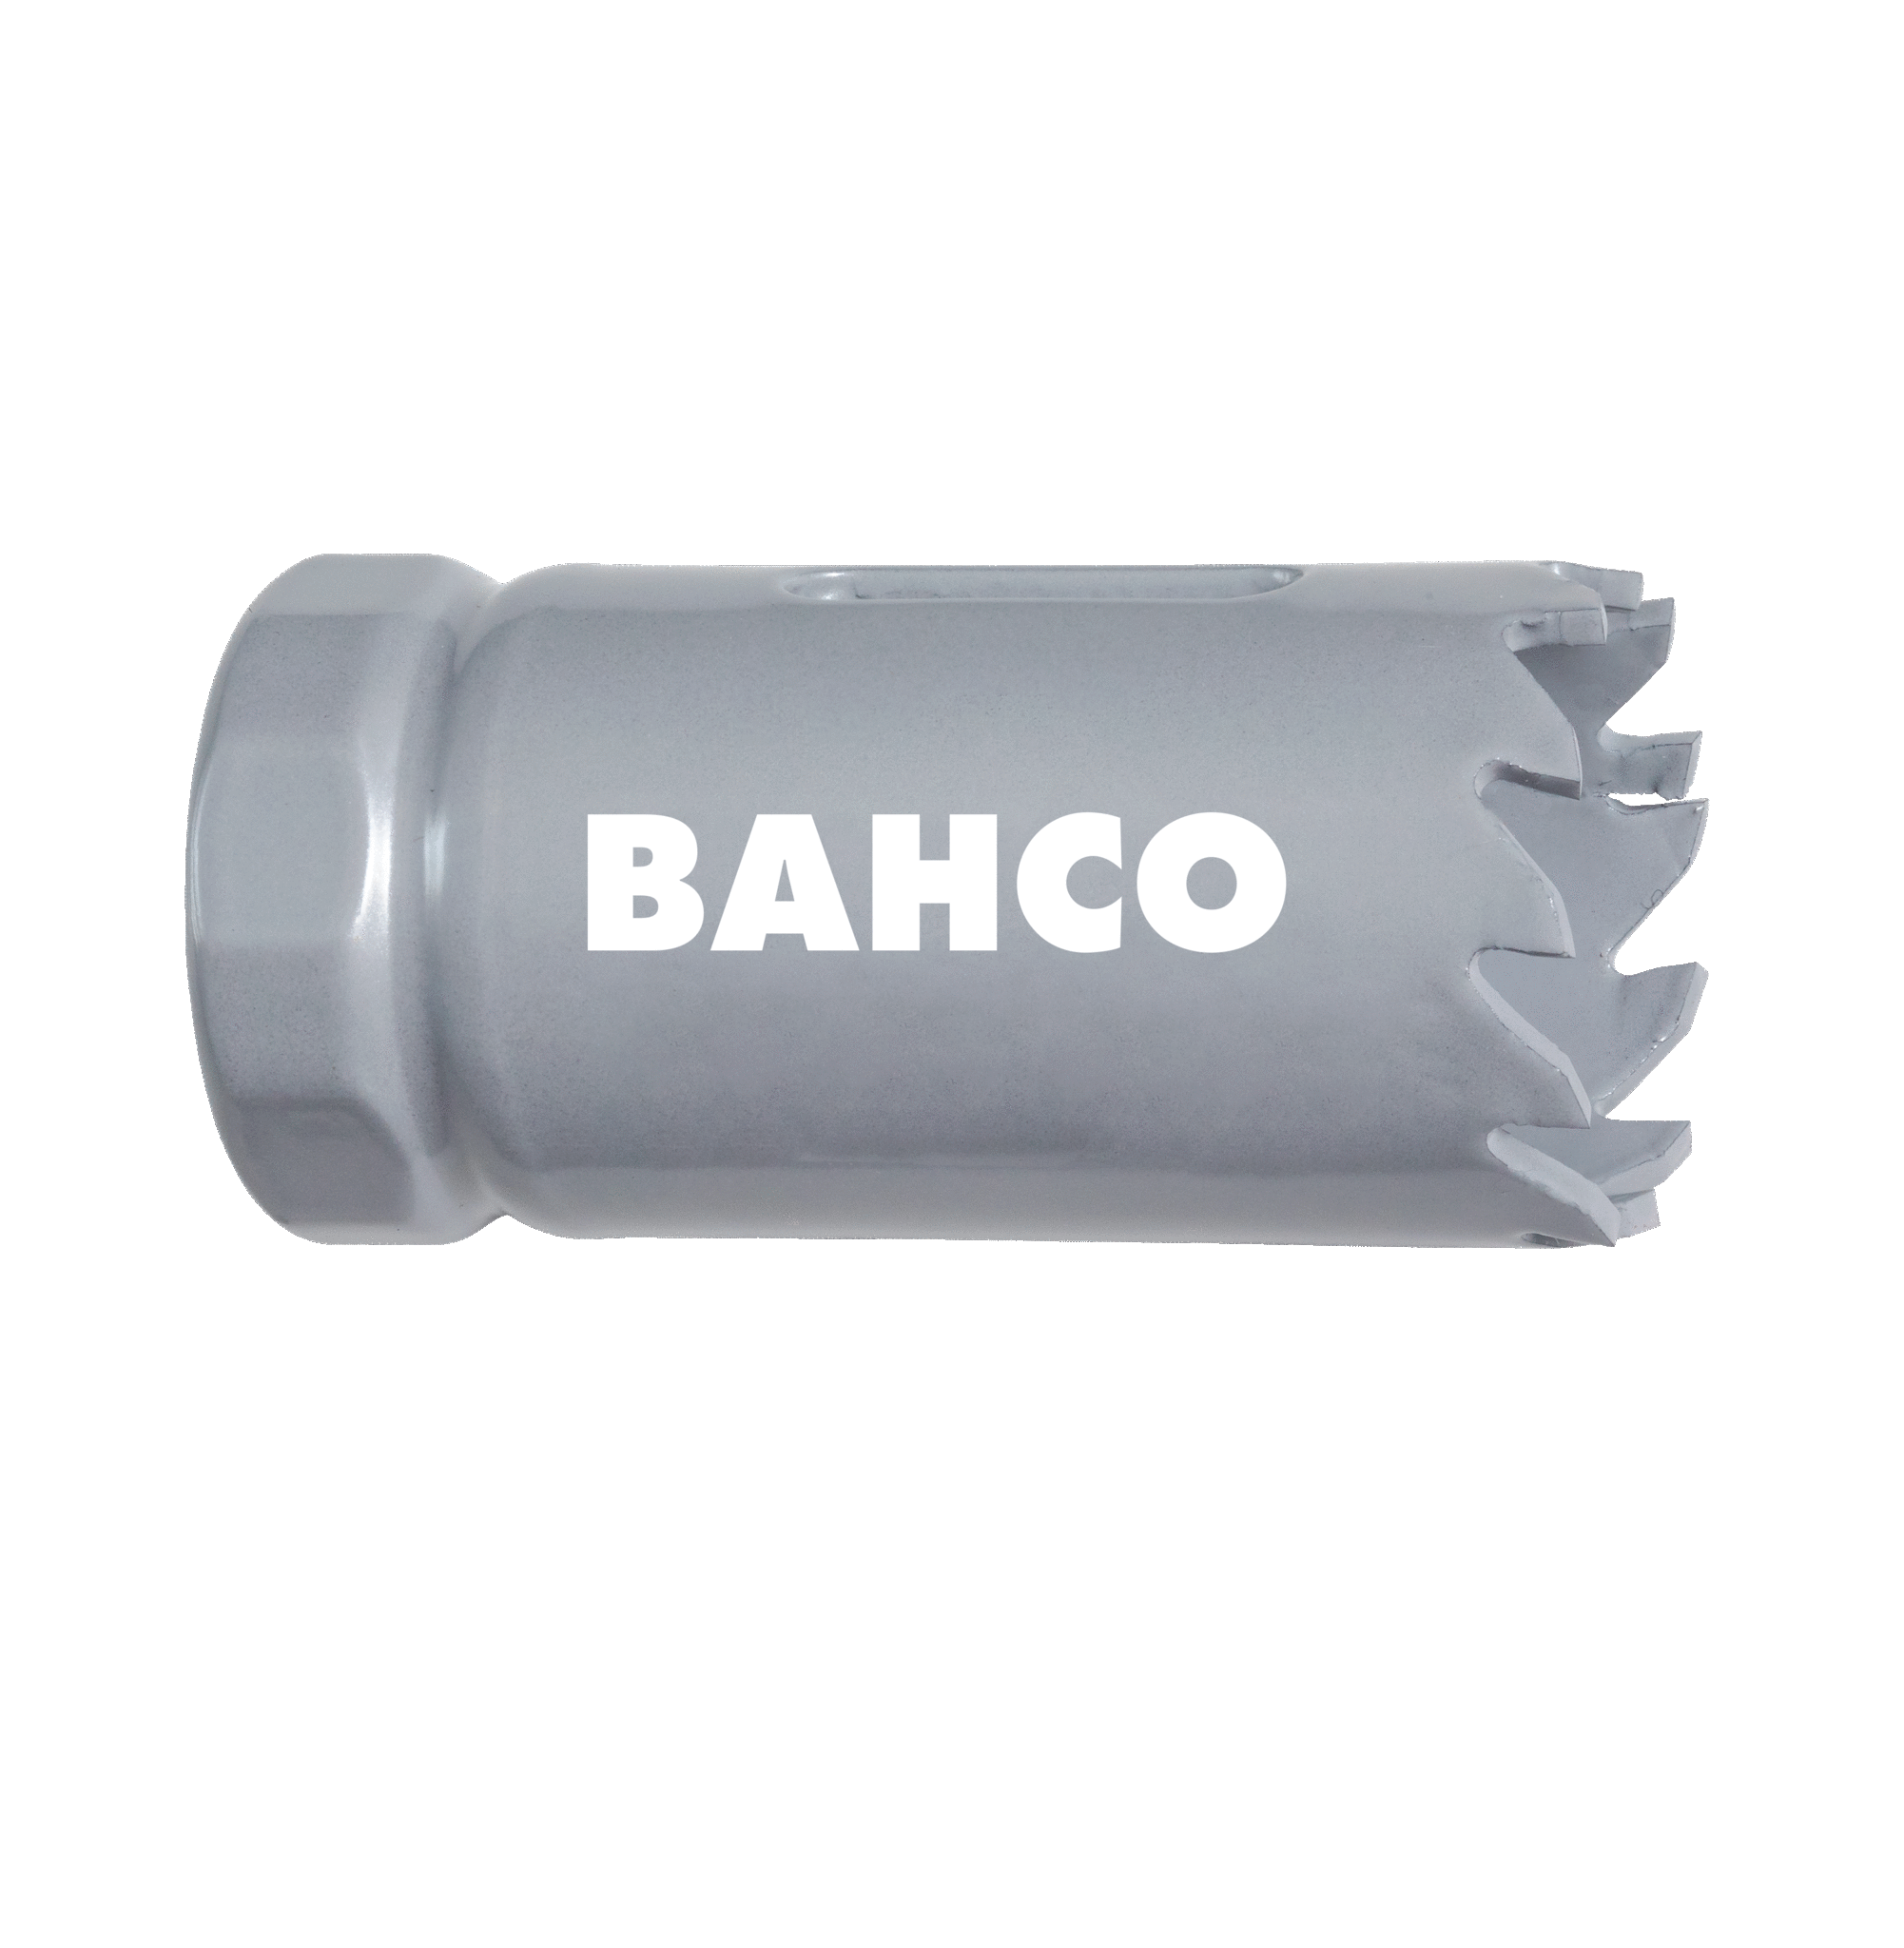 Кольцевые пилы с твердосплавными напайками BAHCO 3832